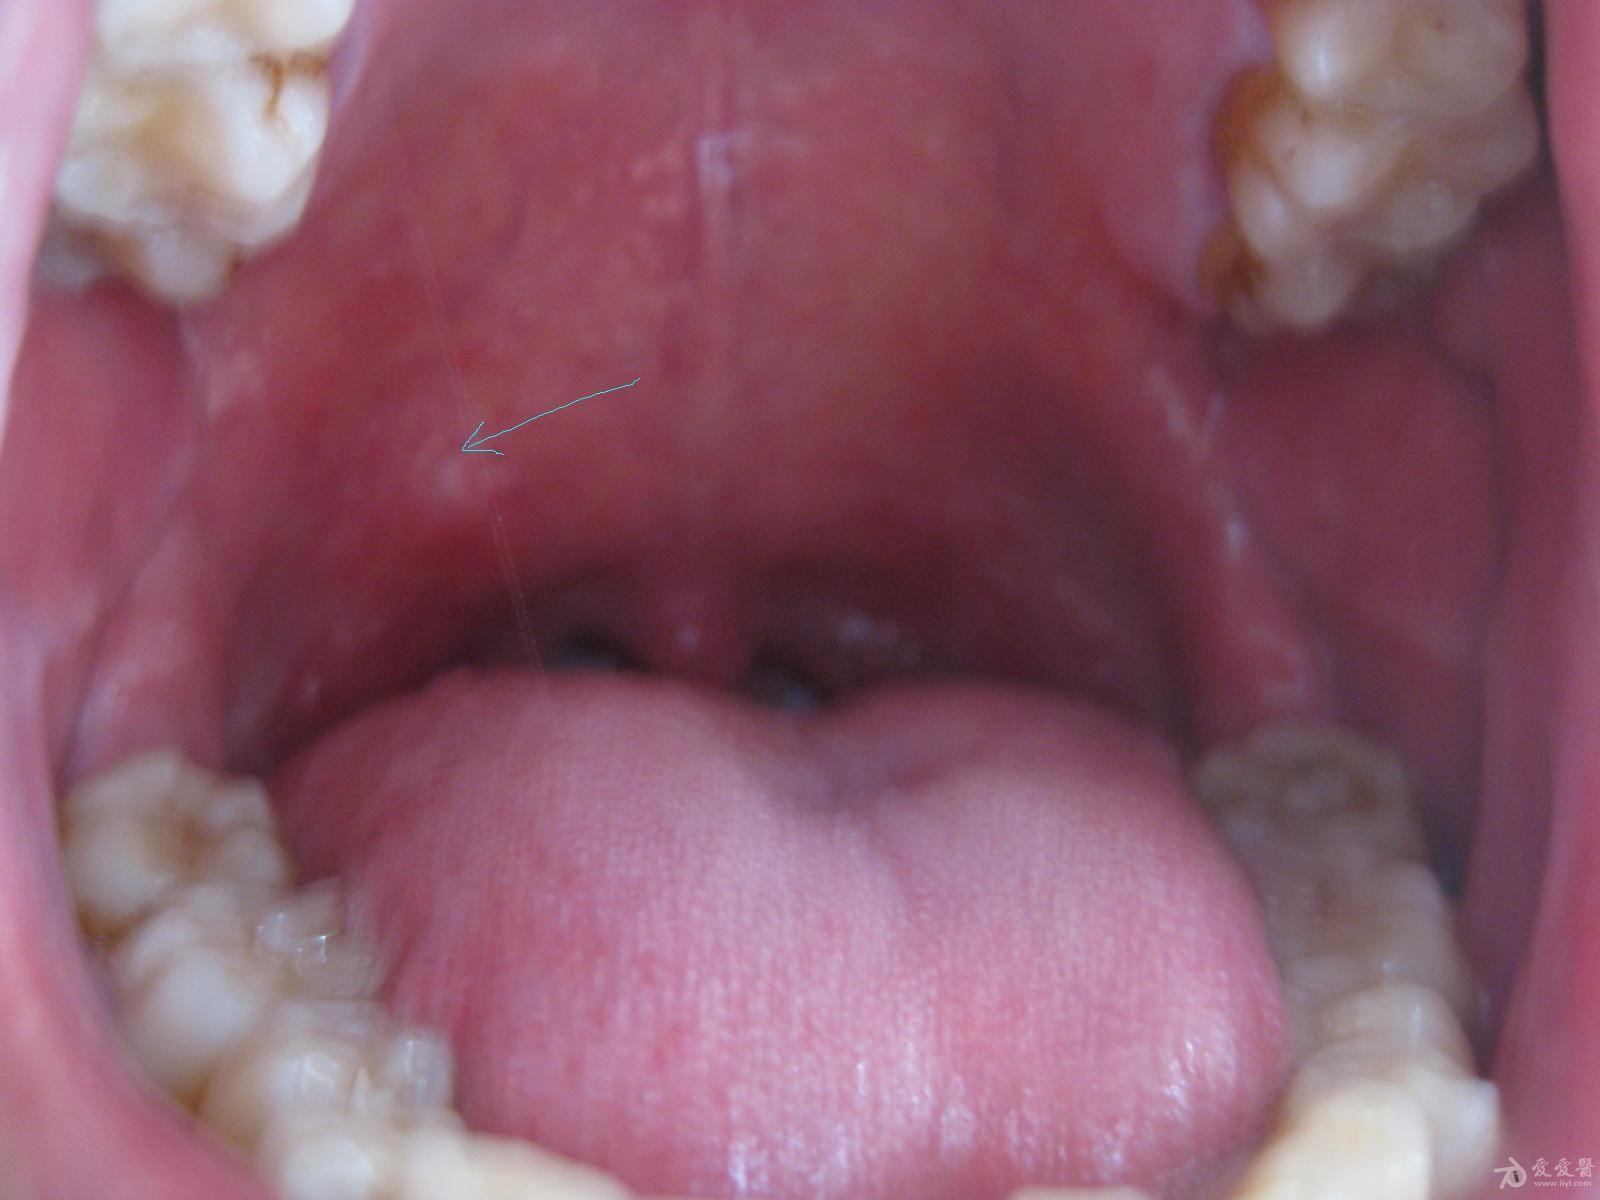 口腔腭咽弓部囊肿图片图片